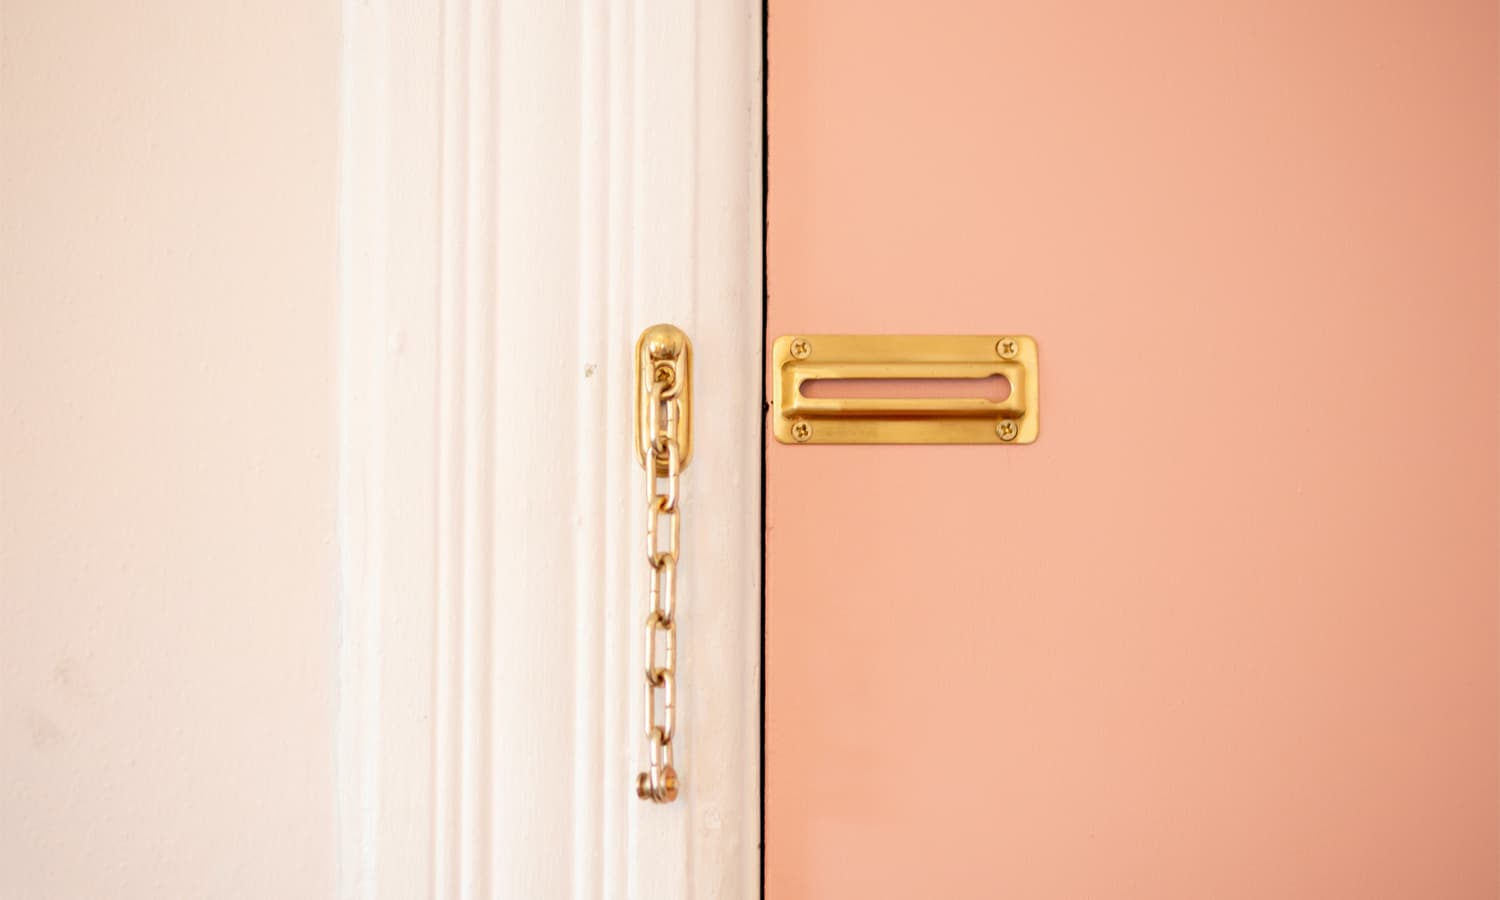 An open door chain lock on a pink door.